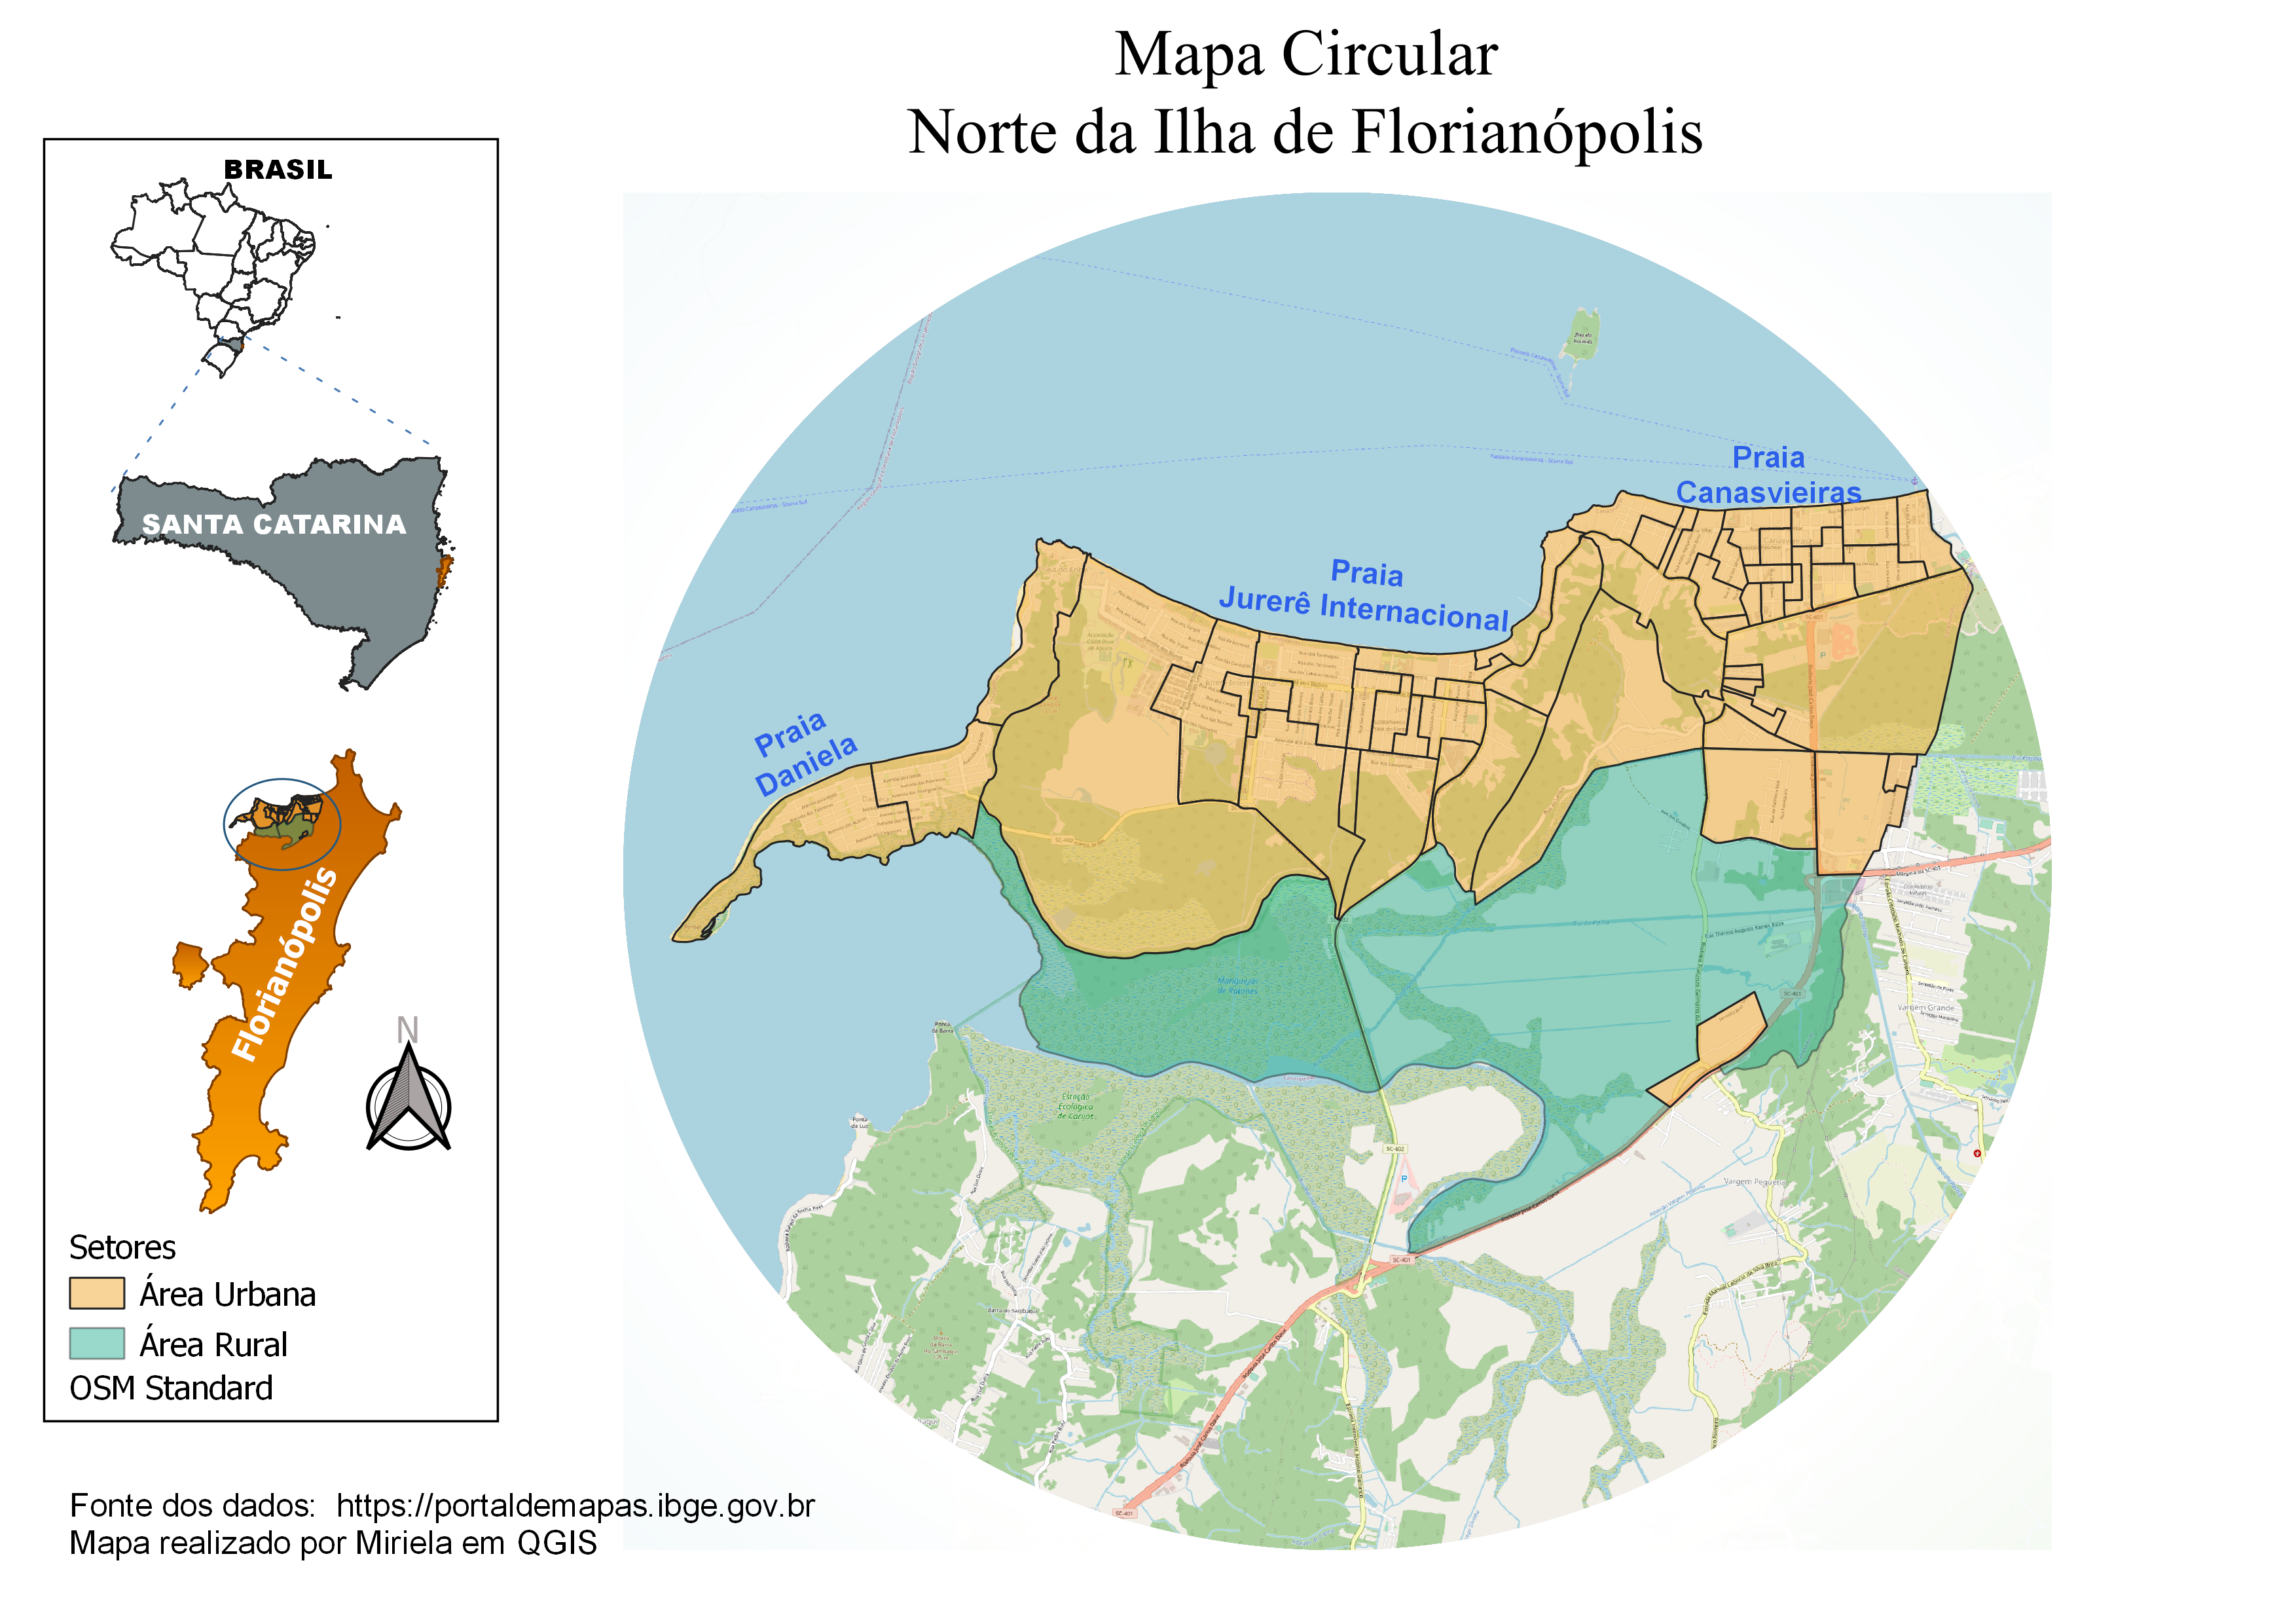 Mapa Circular do norte de Florianópolis